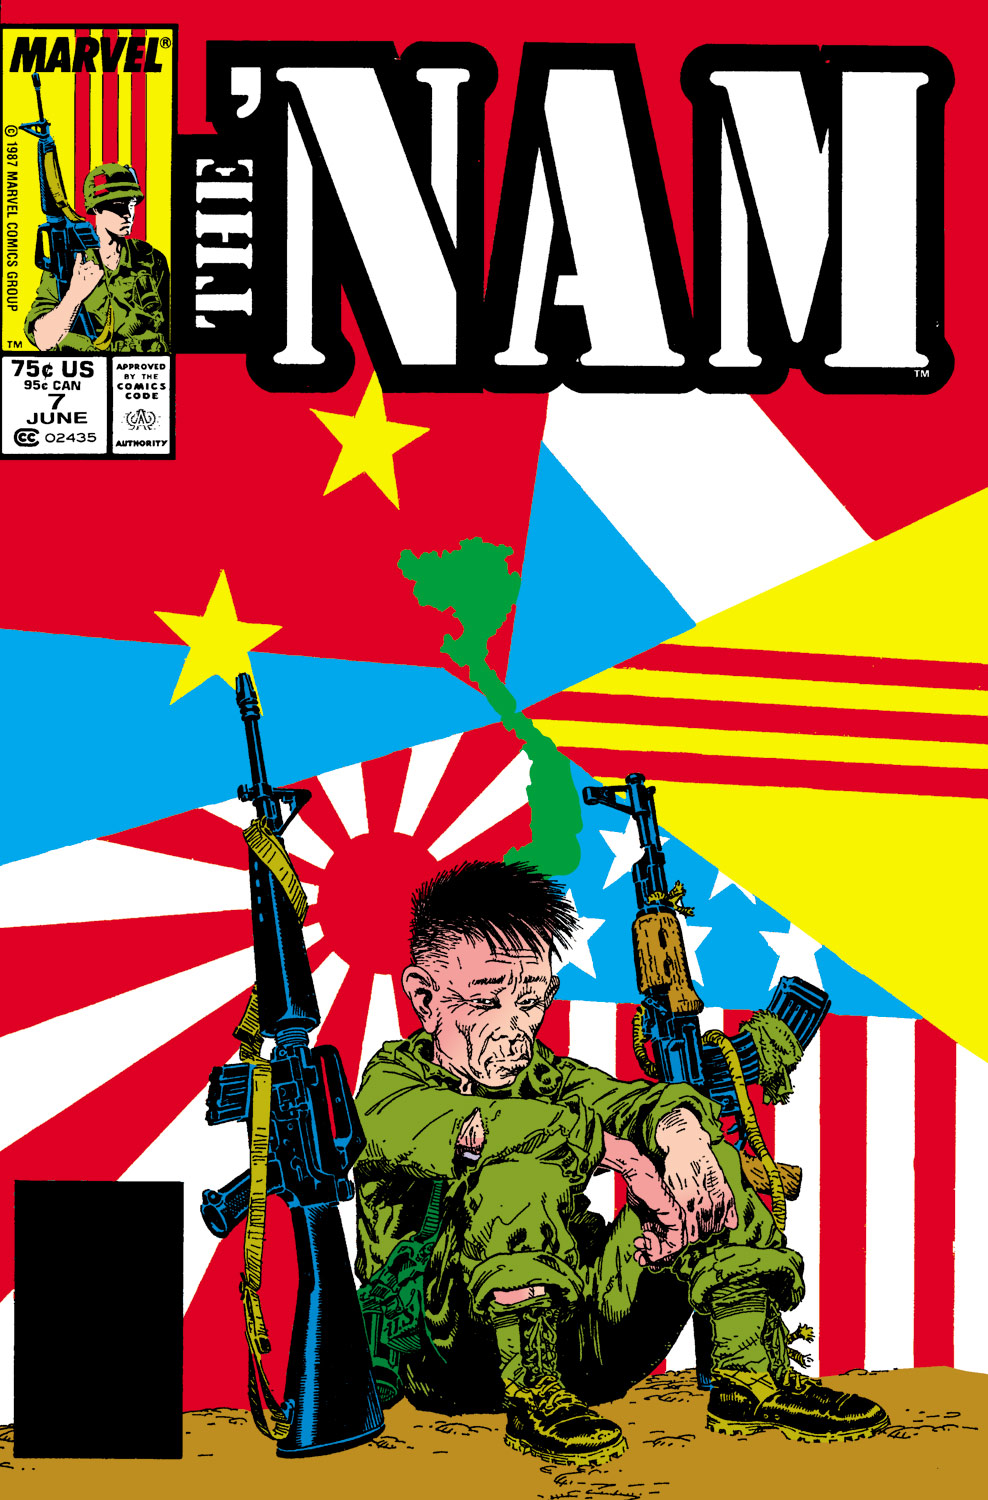 The 'NAM (1986) #7